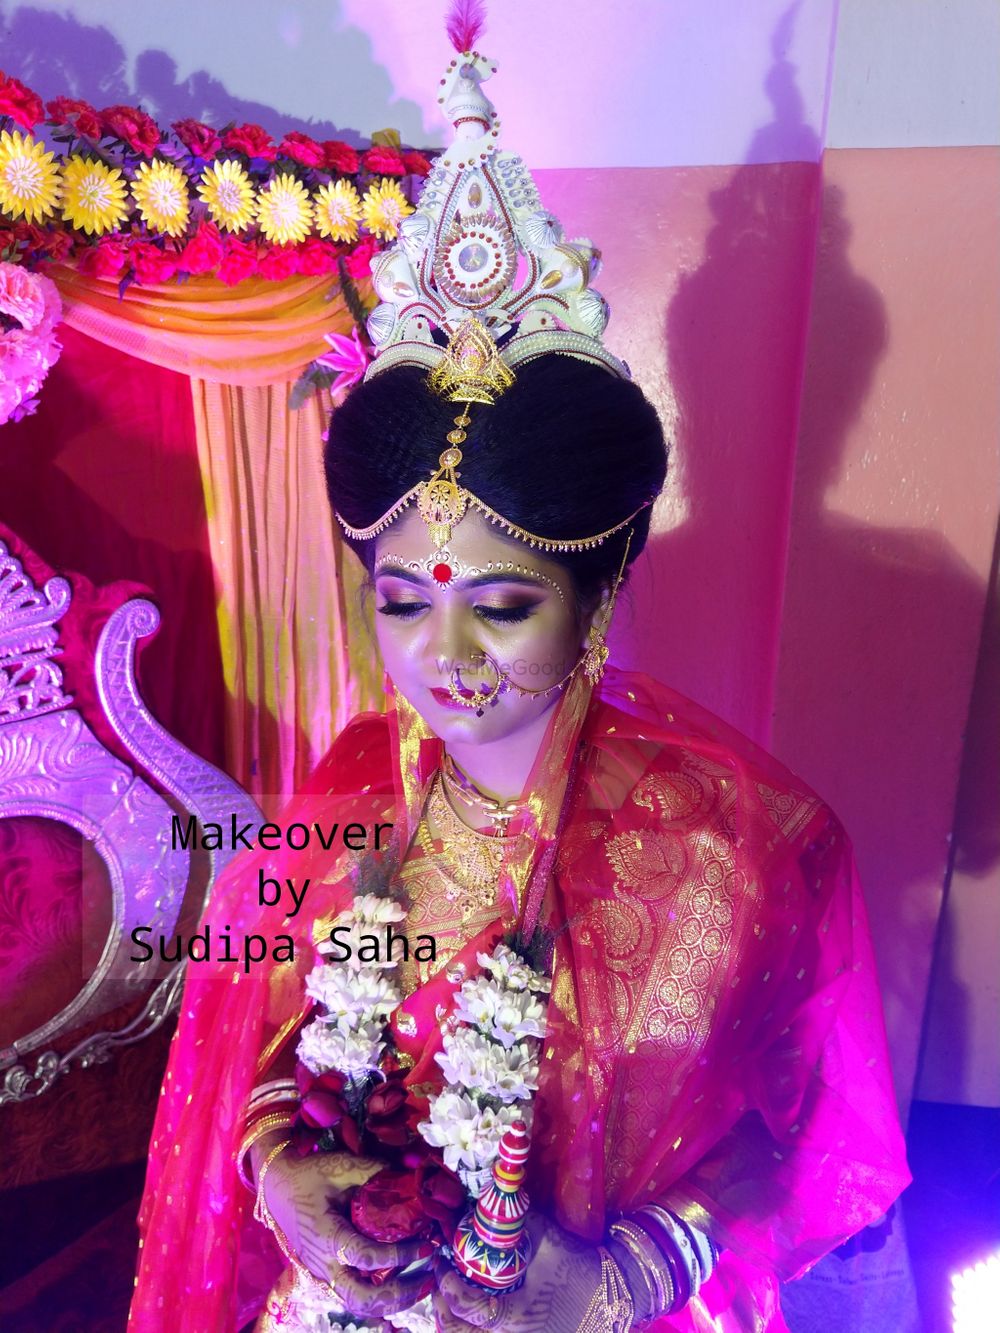 Photo By Makeover By Sudipa Kolkata - Bridal Makeup